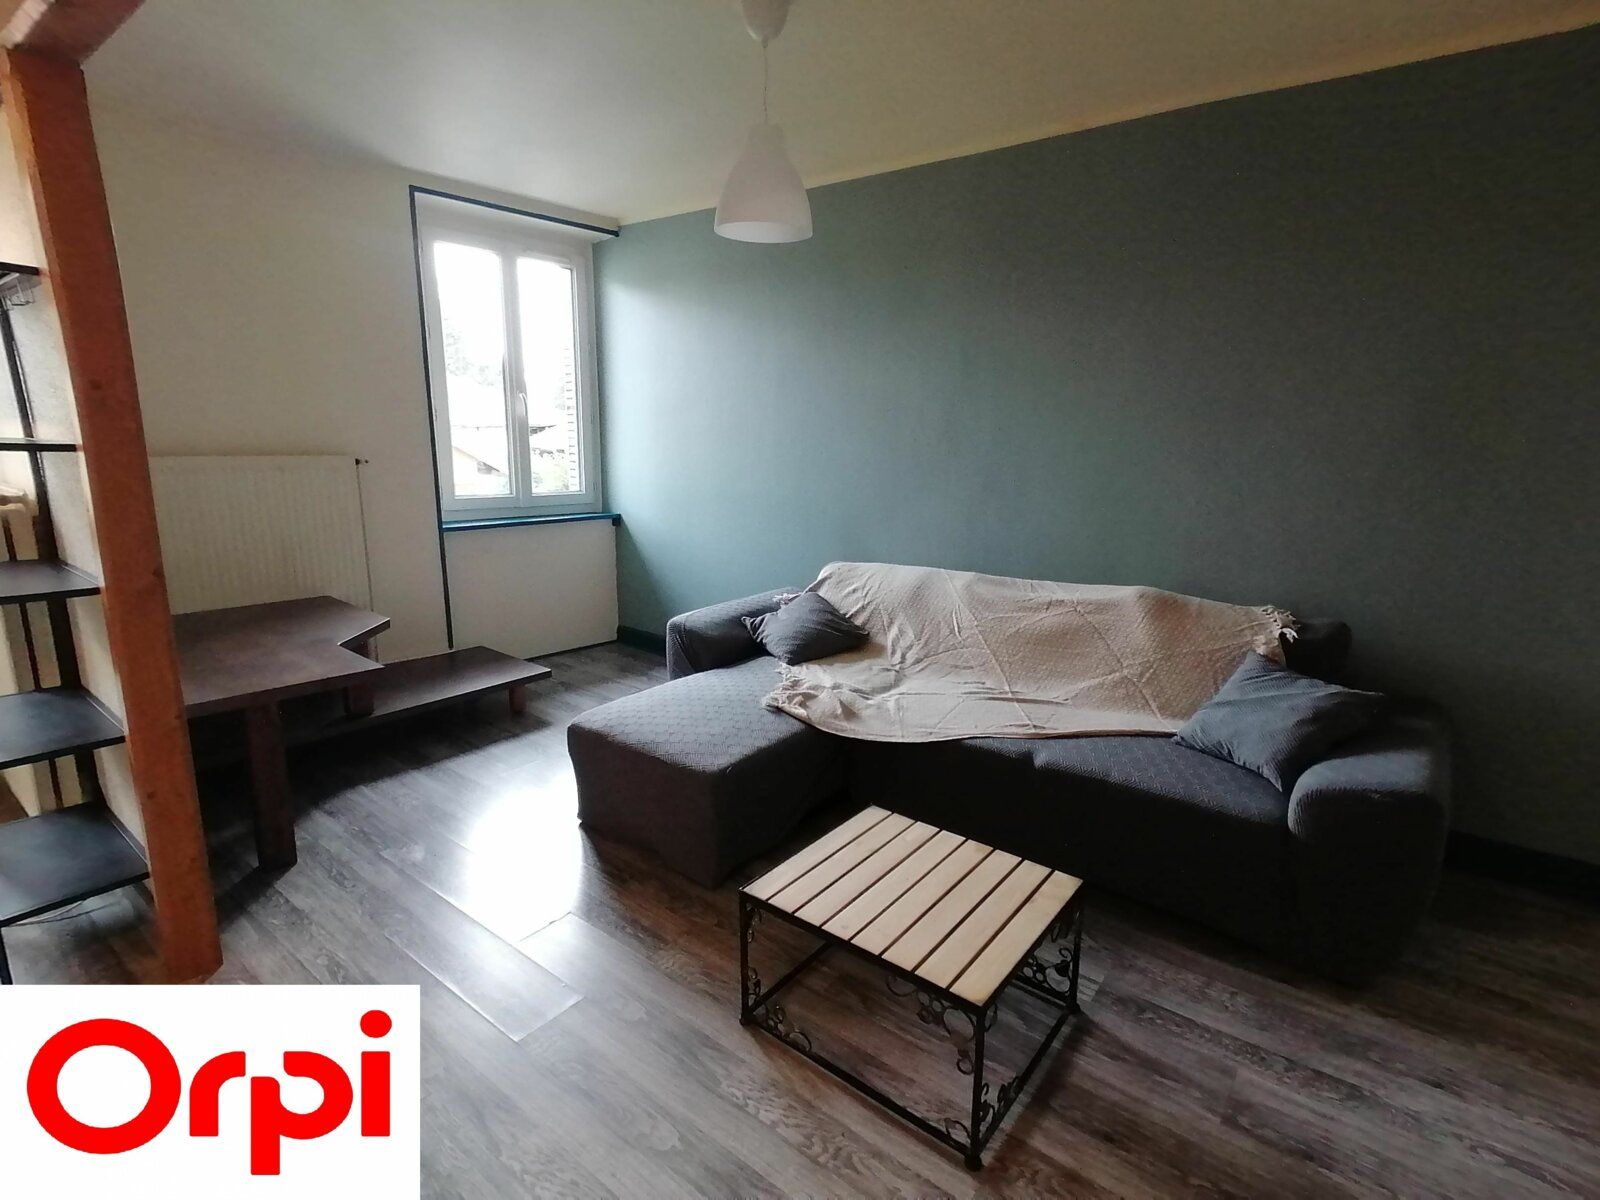 Appartement à louer 2 57m2 à Saint-Étienne-de-Saint-Geoirs vignette-3